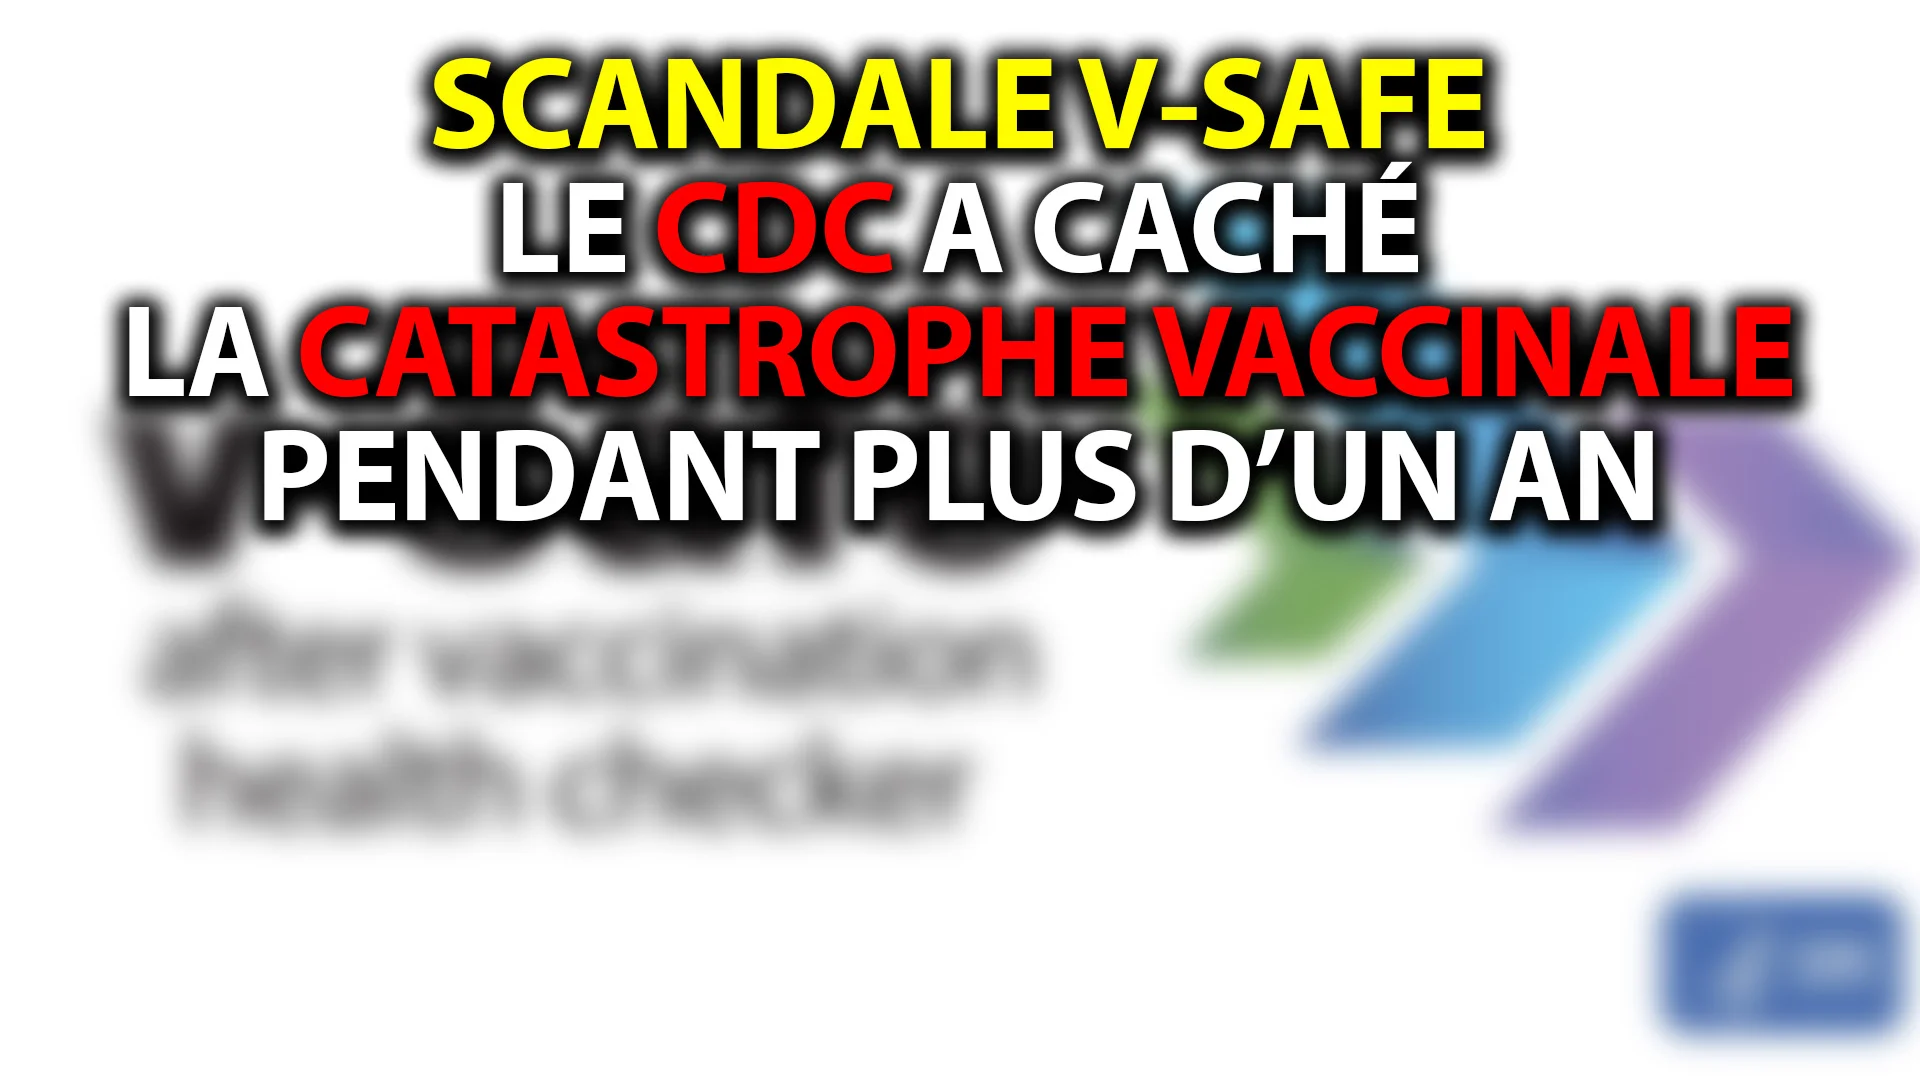 SCANDALE V-SAFE: LE CDC A CACHÉ LA CATASTROPHE VACCINALE PENDANT PLUS D’UN AN